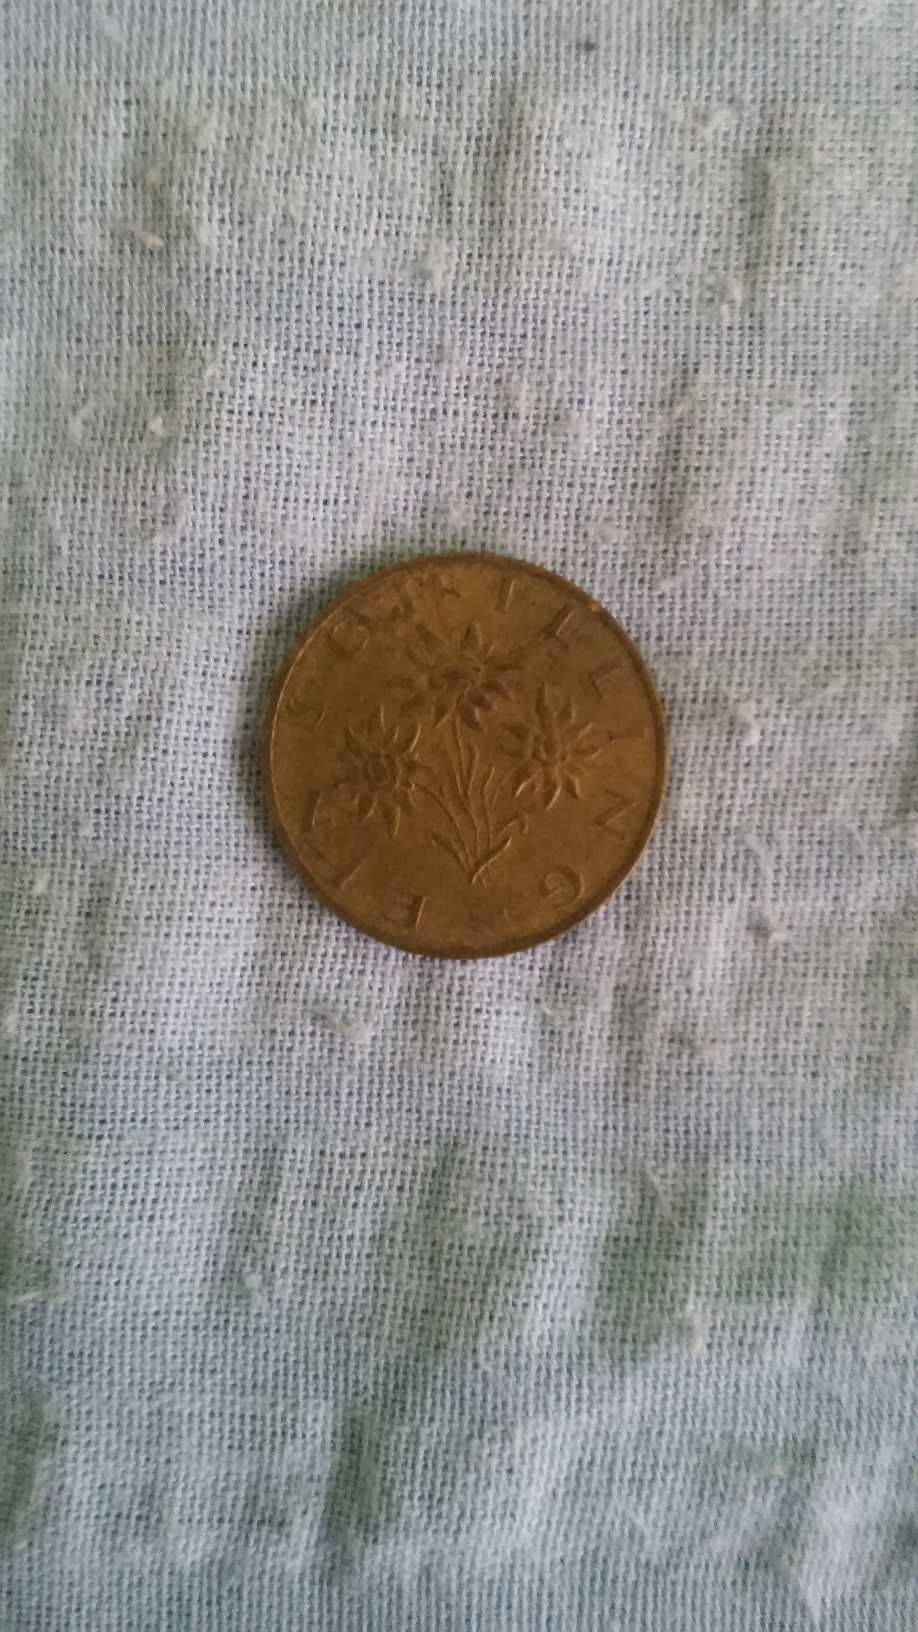 Austria - moneta do kolekcji